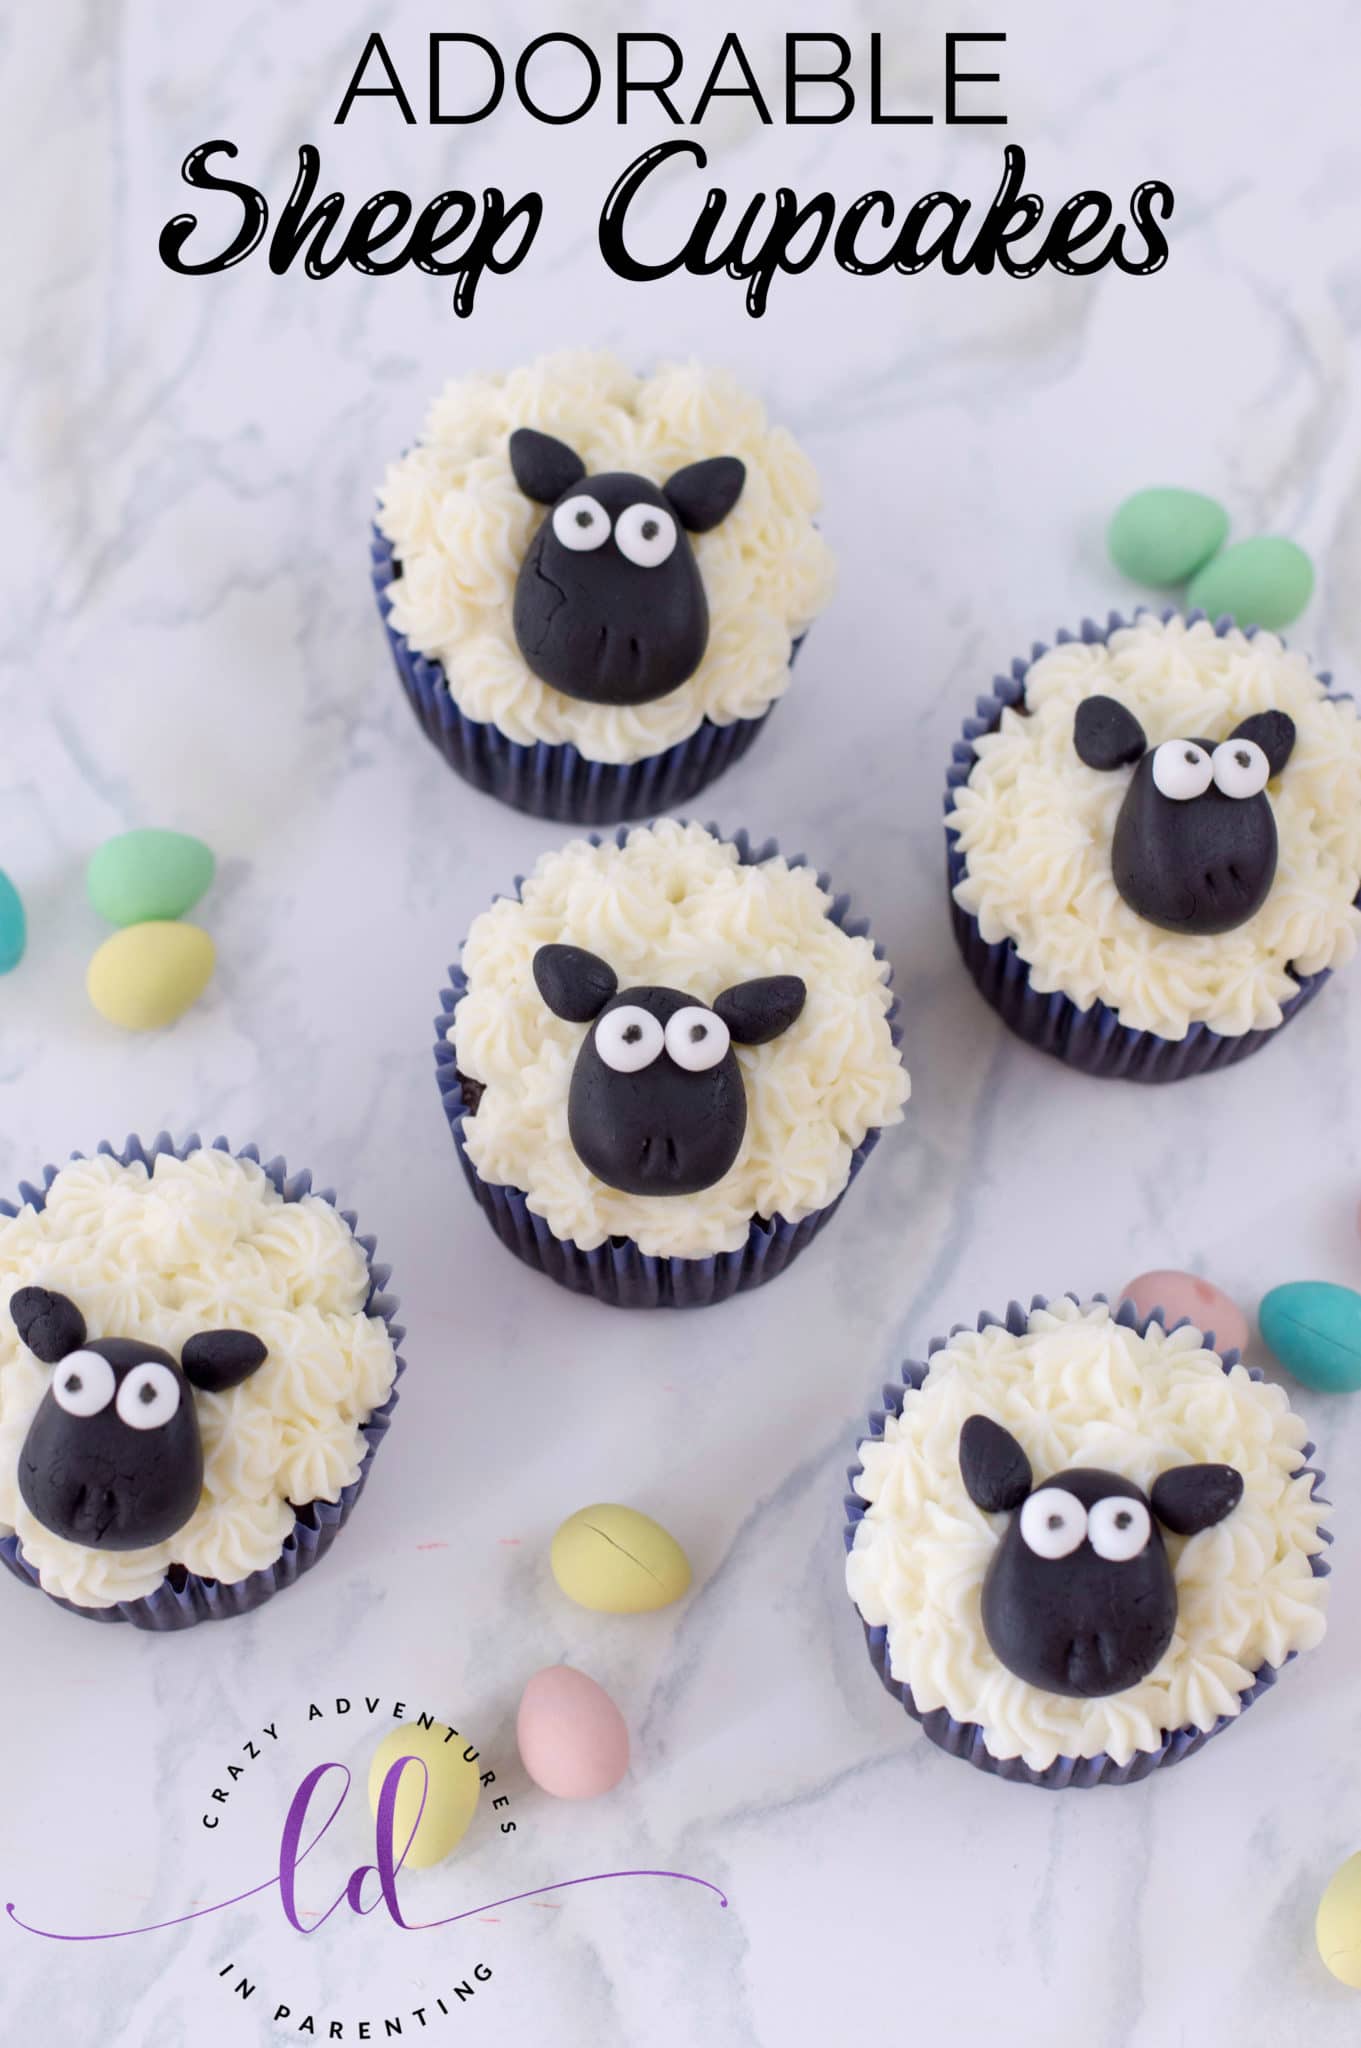 Adorable Sheep Cupcakes